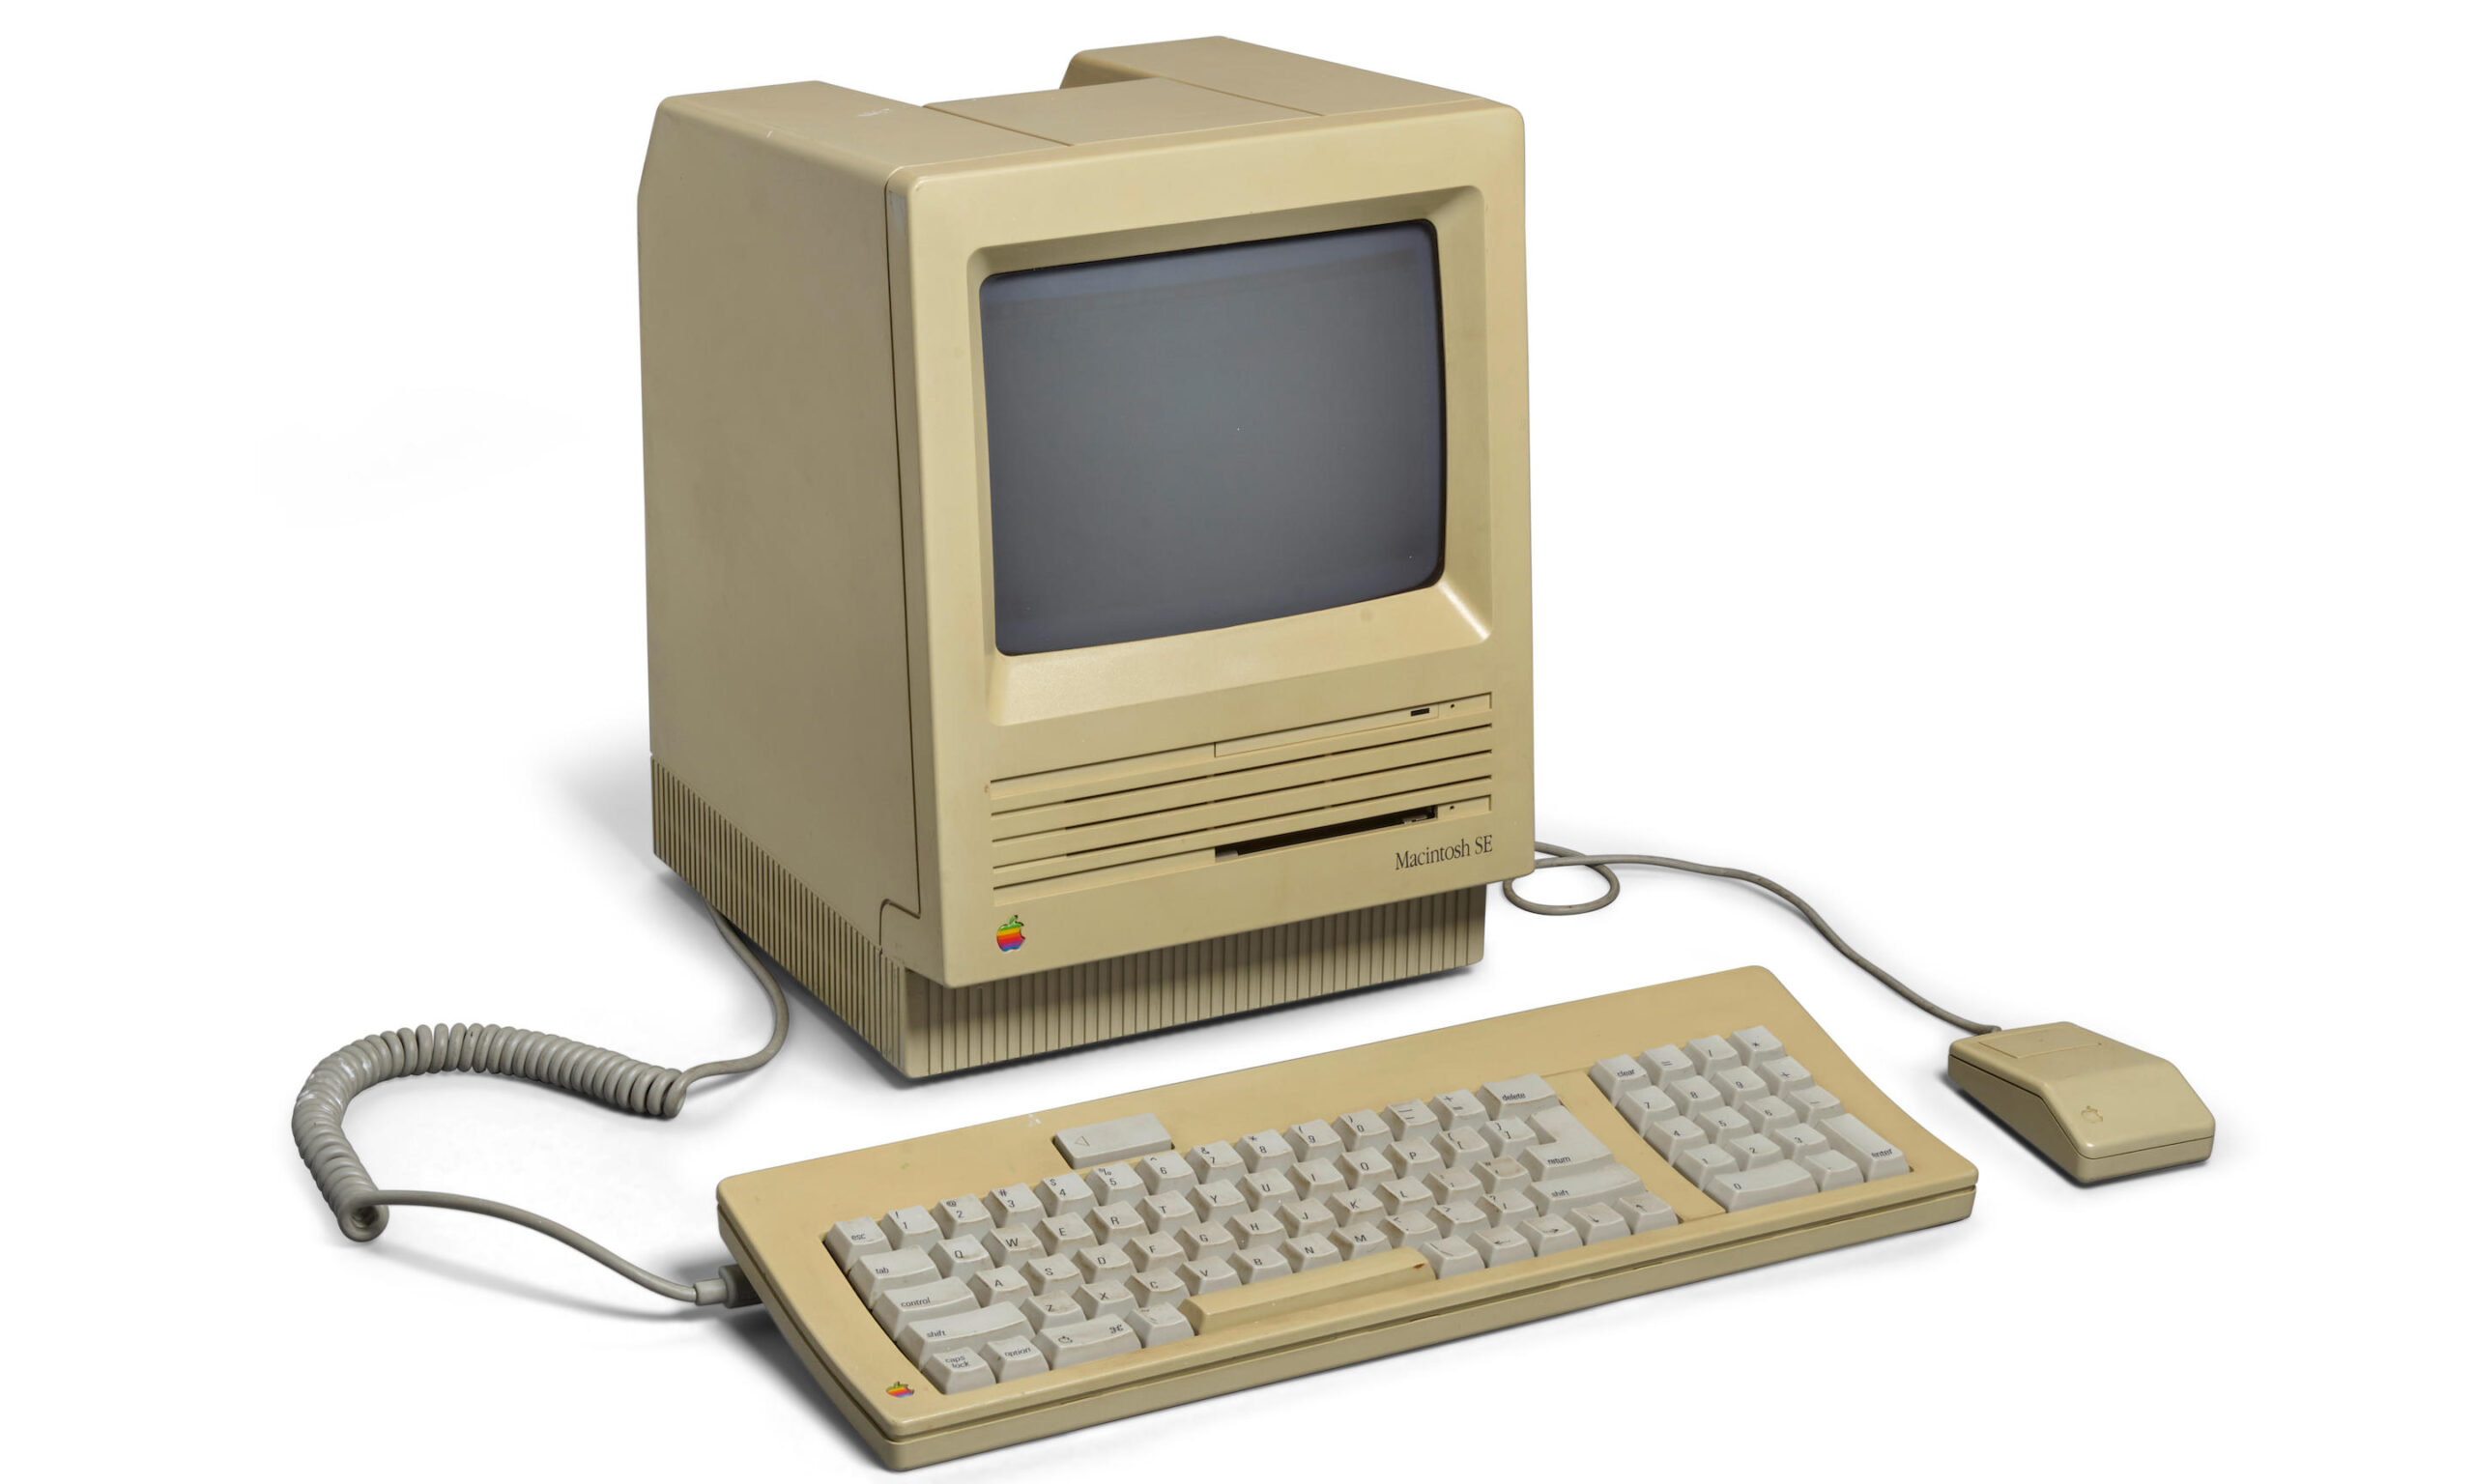 价值高达 30 万美元，史蒂夫·乔布斯使用的 Macintosh SE 计算机将被拍卖